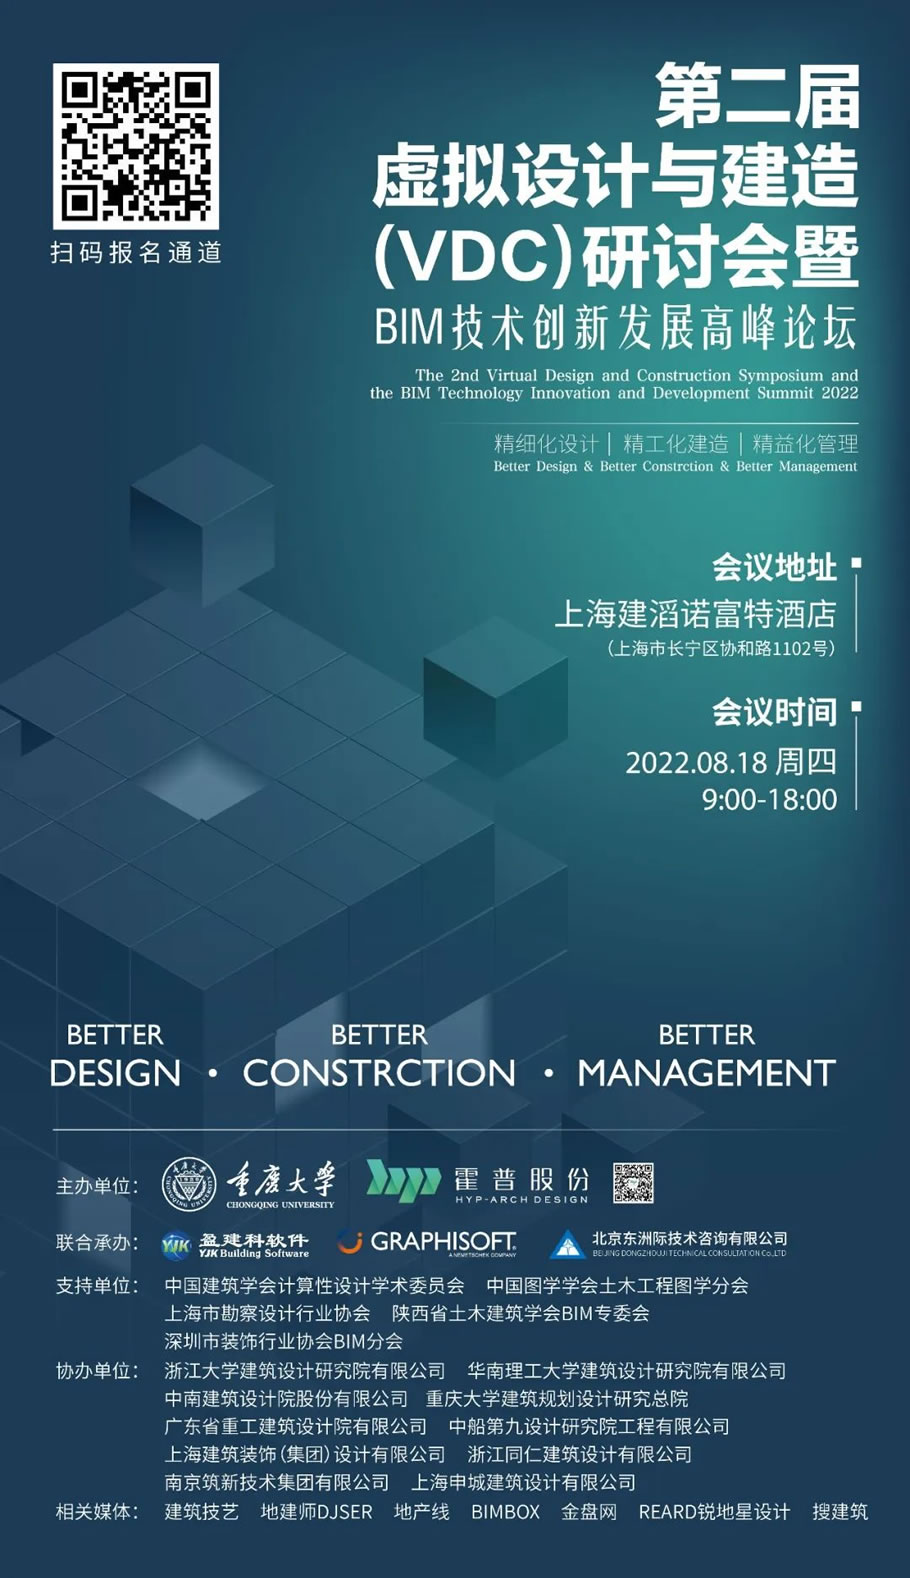 会议通知| 8月18日，第二届虚拟设计与建造（VDC）研讨会暨BIM技术创新